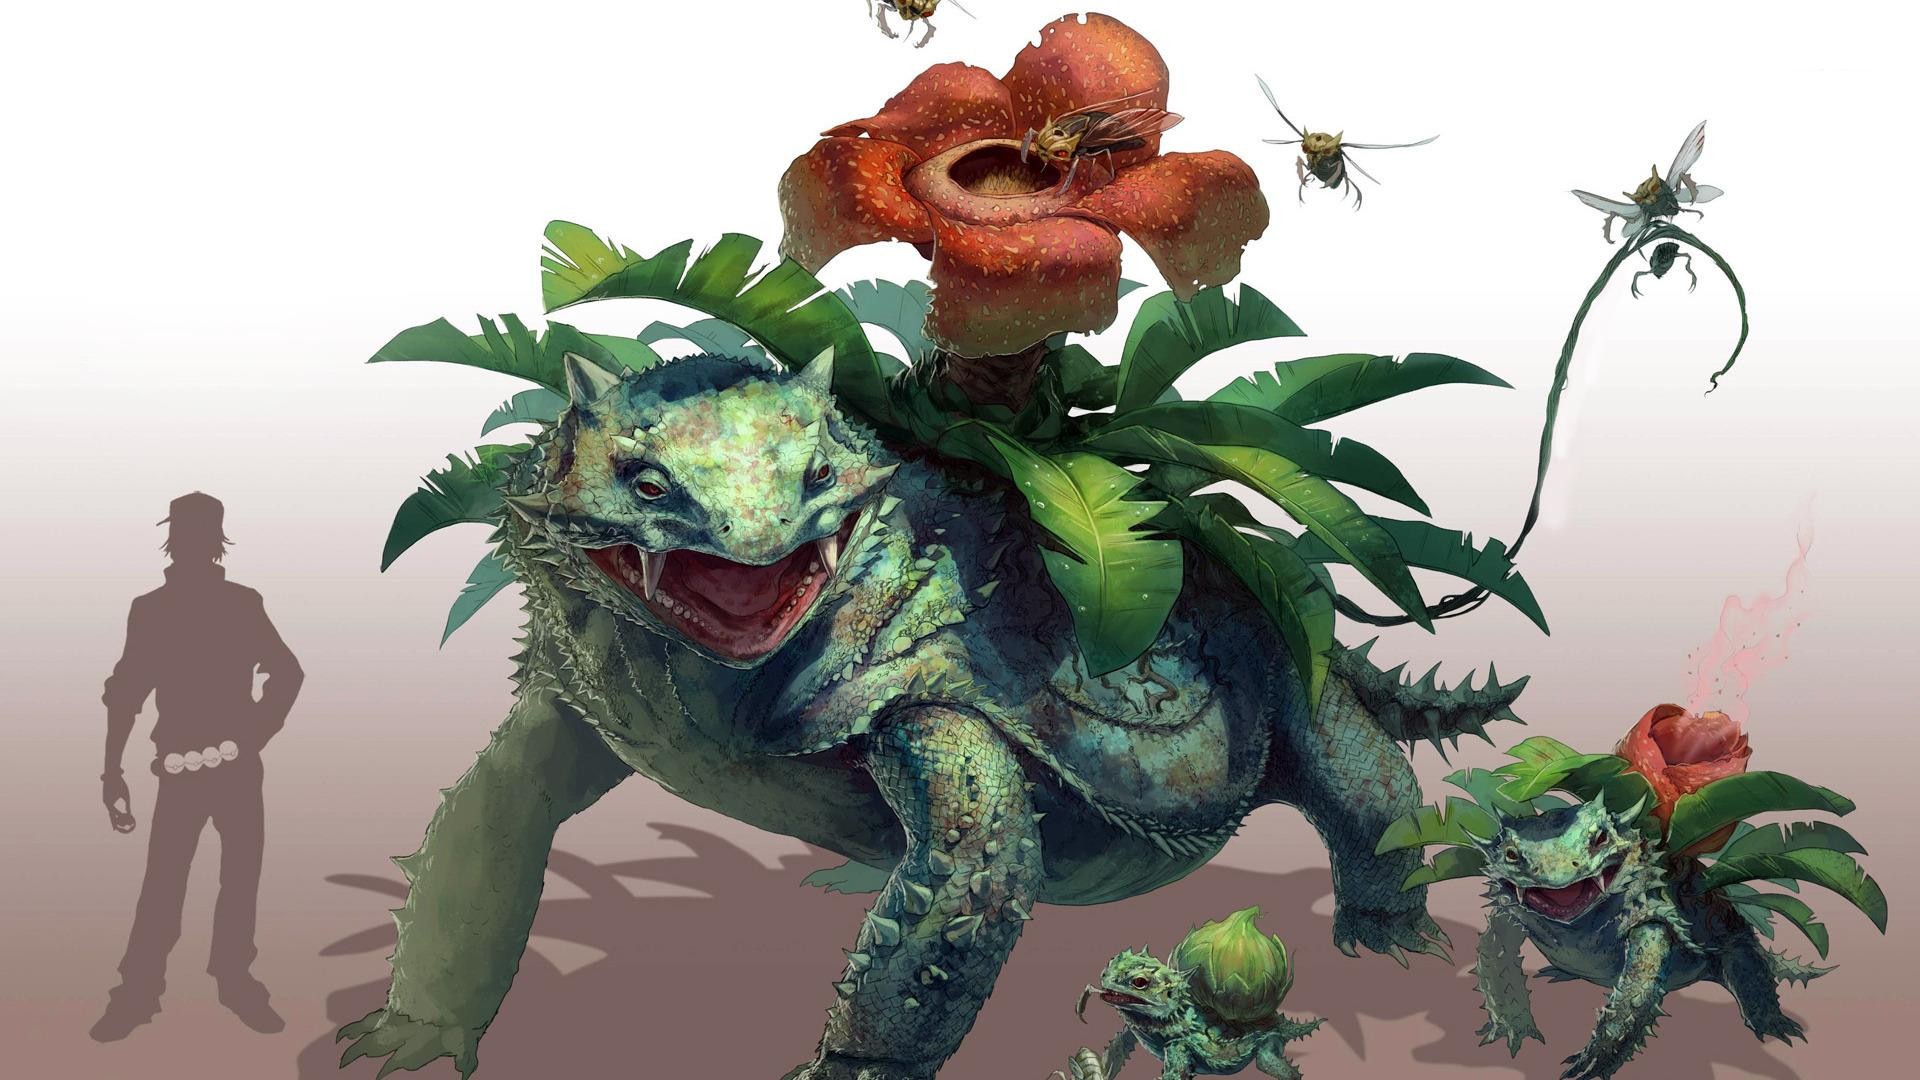 fond d'écran bulbasaur,dessin animé,animation,personnage fictif,illustration,plante